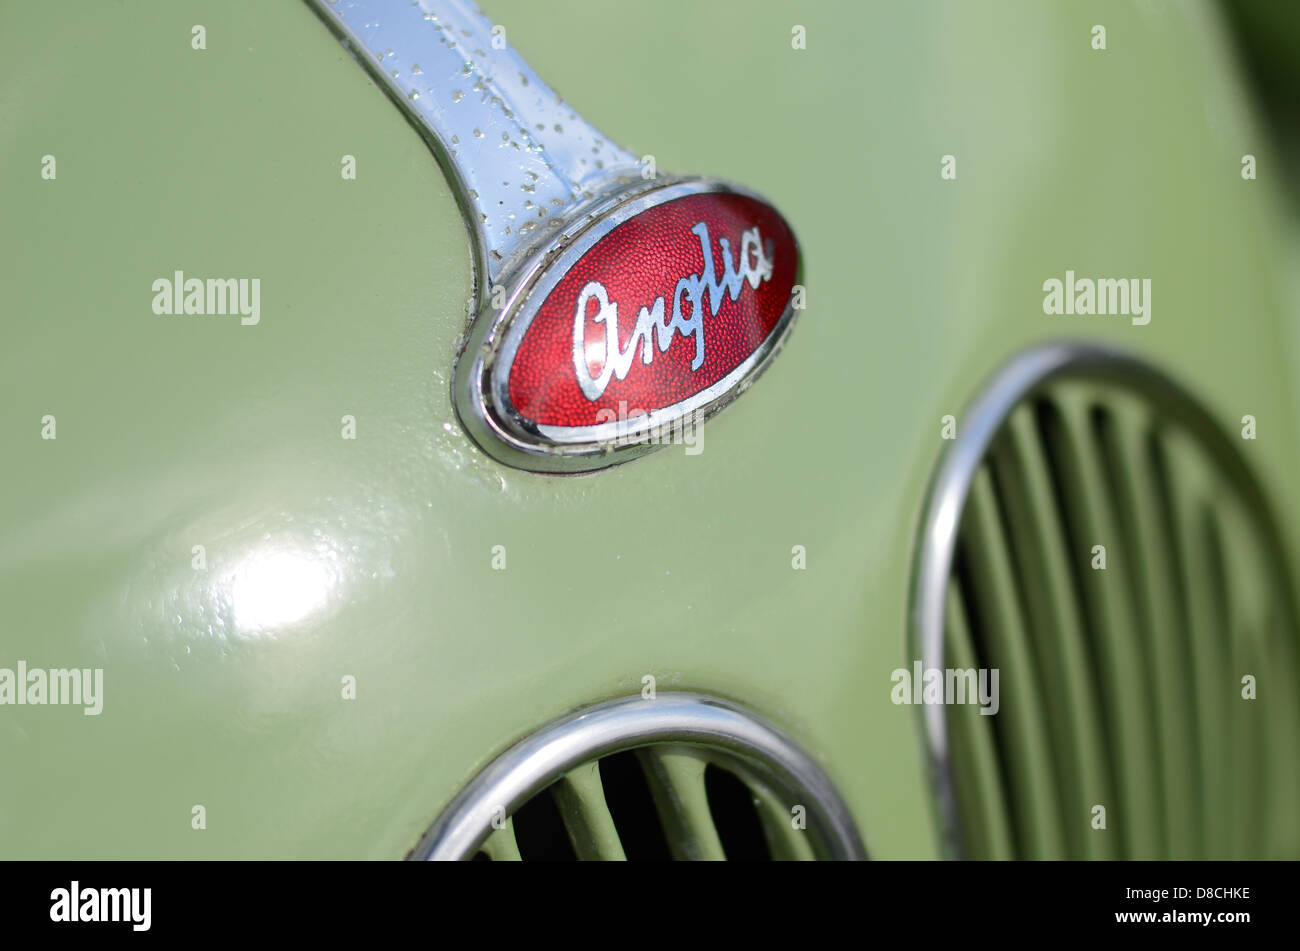 Classic car – Ford Anglia. Stock Photo